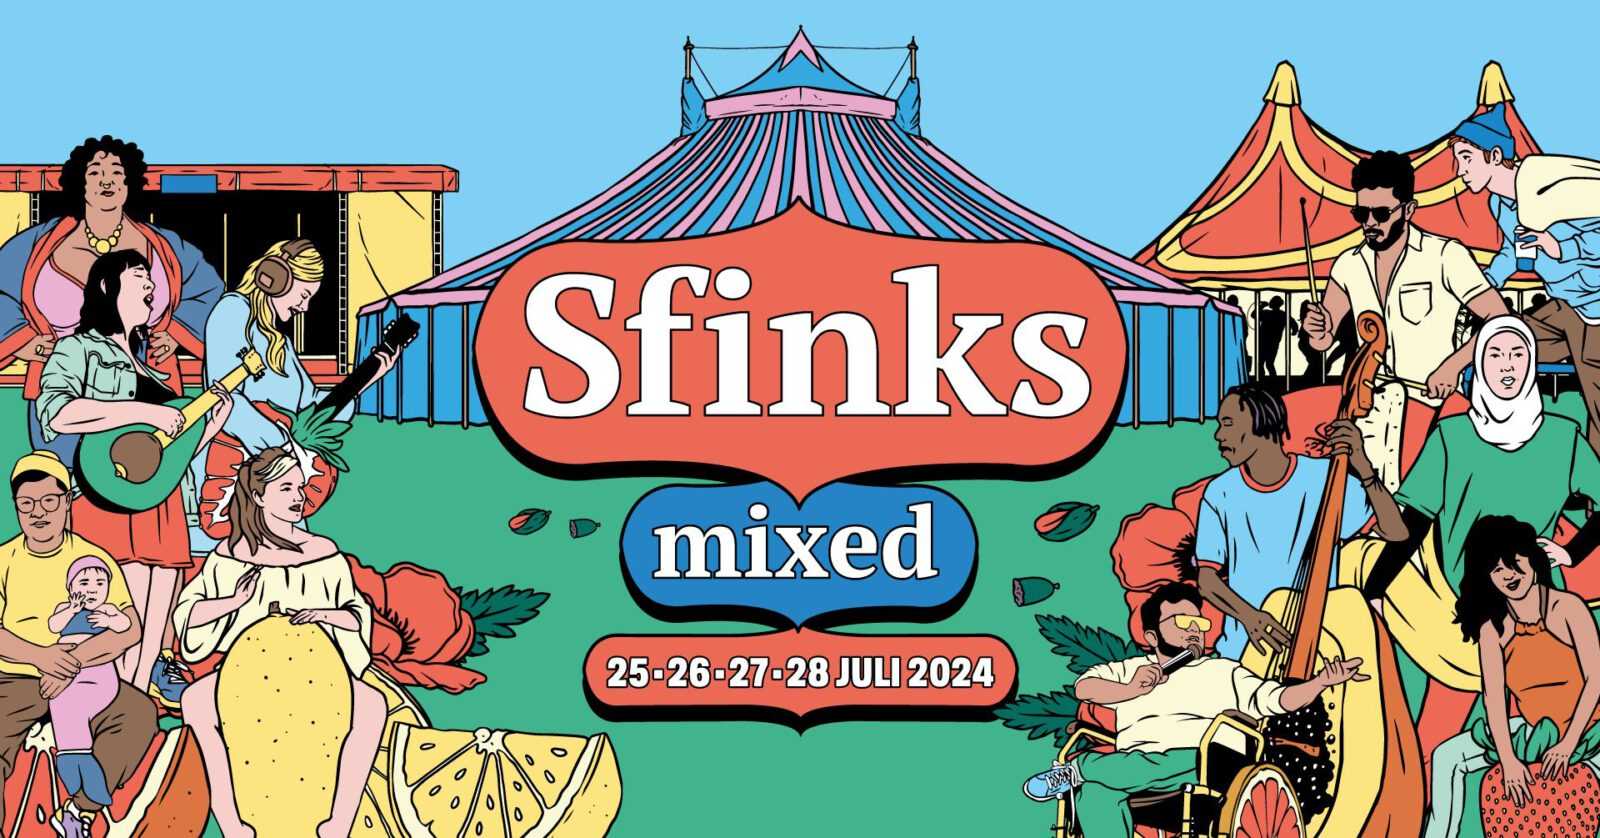 sfinks mixed 2024 Gratis festival voor jong en oud